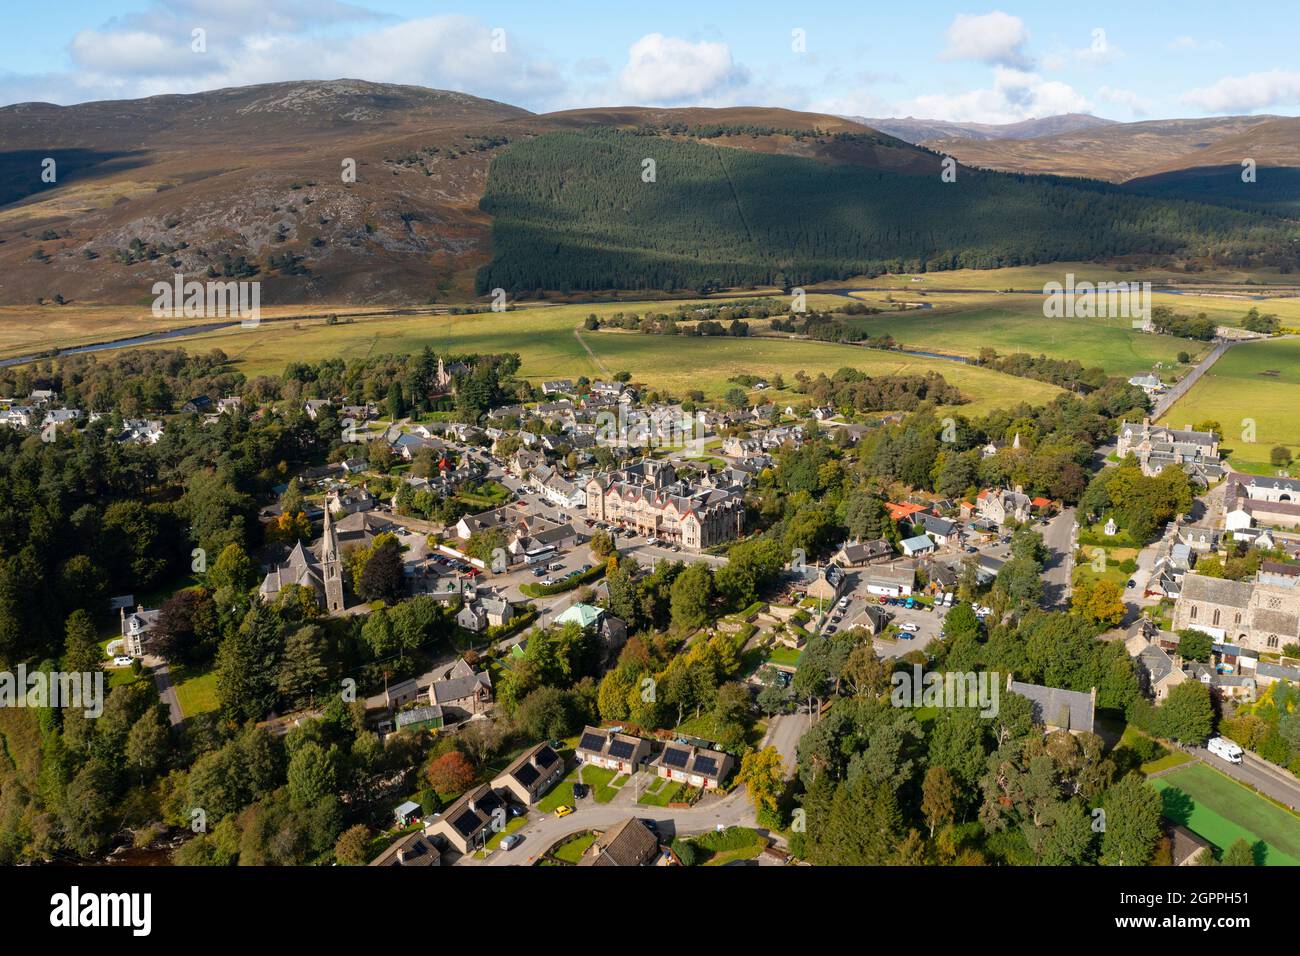 Vue aérienne du drone du village de Braemar dans le parc national de Cairngorms, sur Royal Deeside, Aberdeenshire, Écosse, Royaume-Uni Banque D'Images